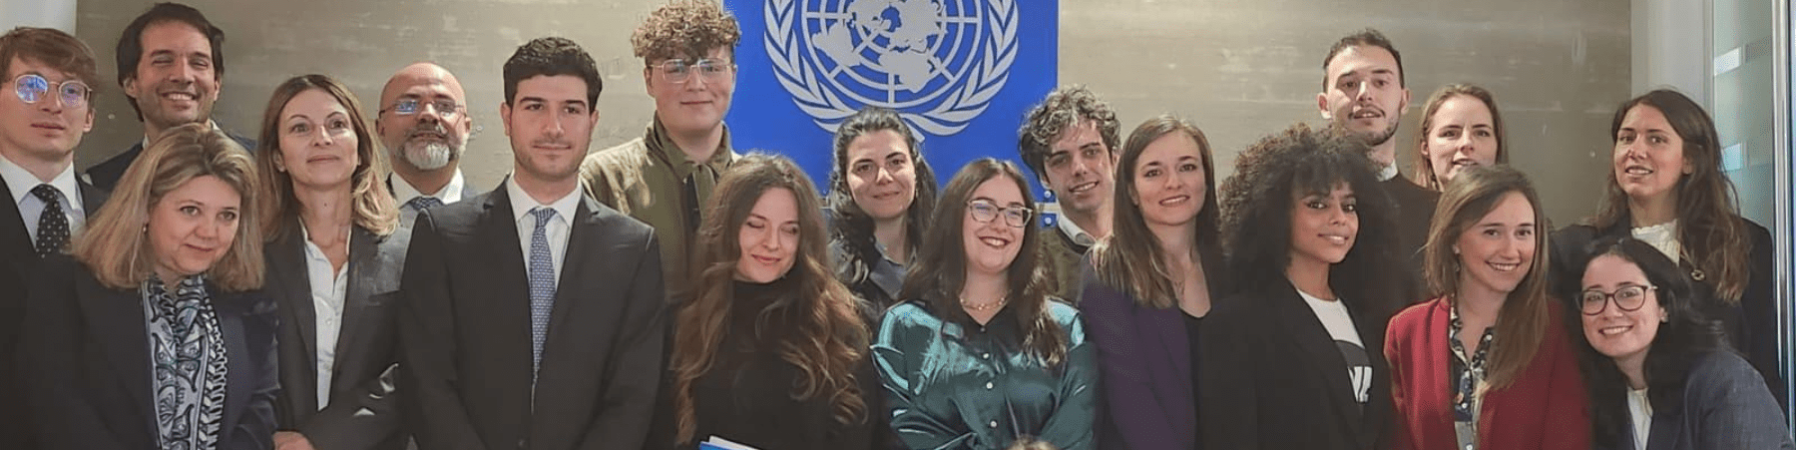 giovani attivisti per l'ambiente in posa con alle spalle logo UNDP 